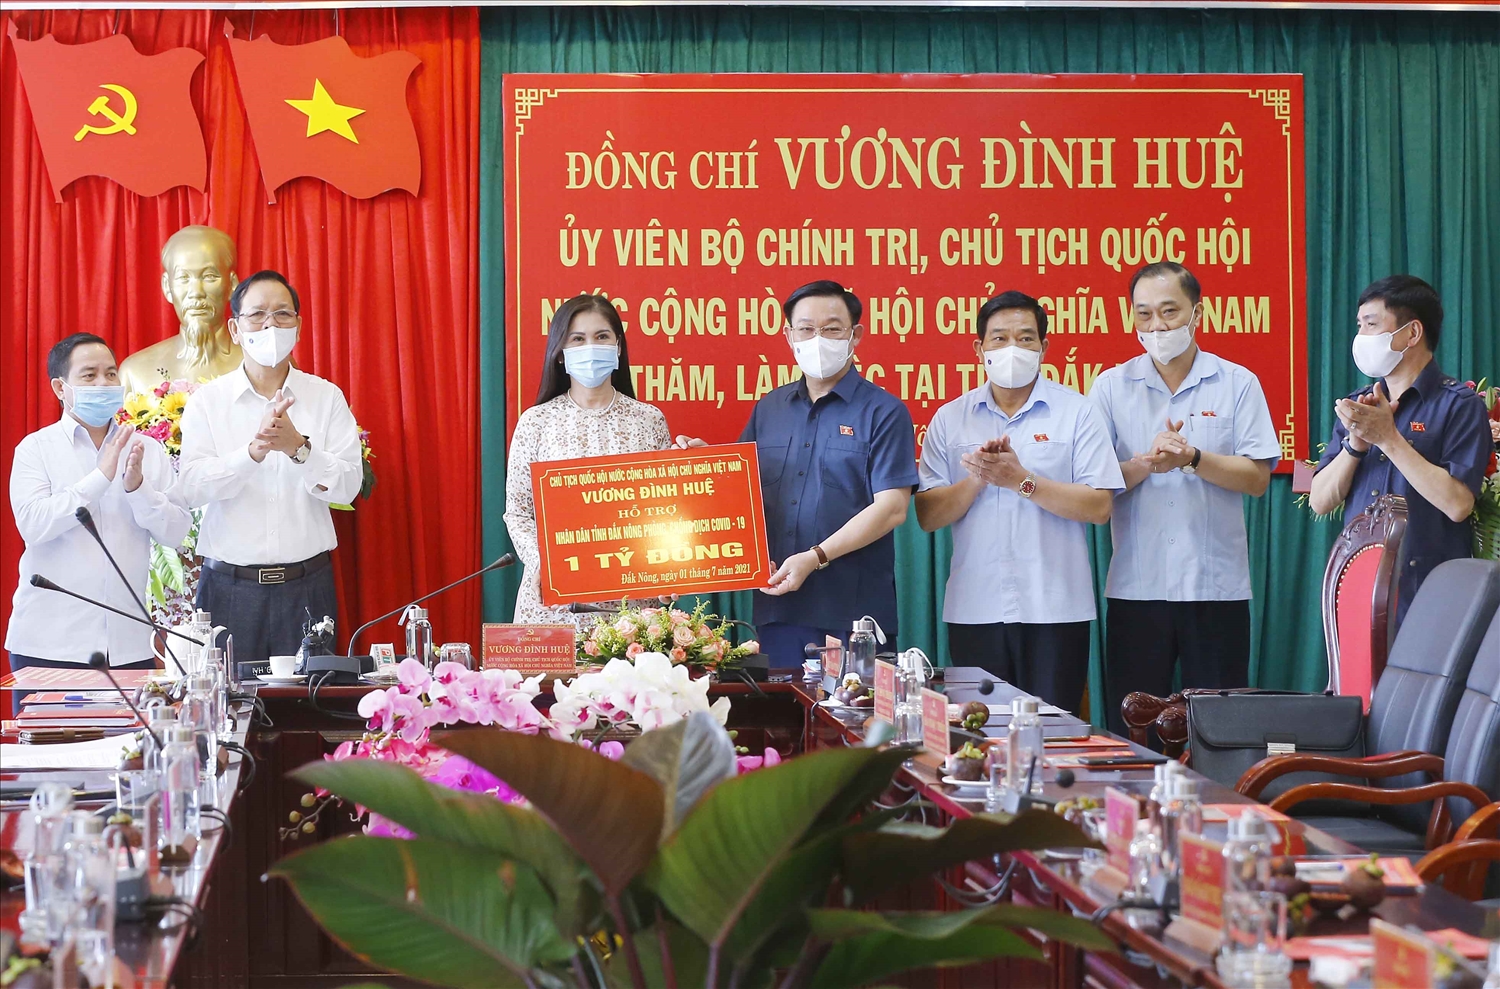 Chủ tịch Quốc hội Vương Đình Huệ đã hỗ trợ Nhân dân tỉnh Đắk Nông trong công tác phòng chống dịch COVID-19 1 tỷ đồng. Ảnh: VGP/Thành Chung